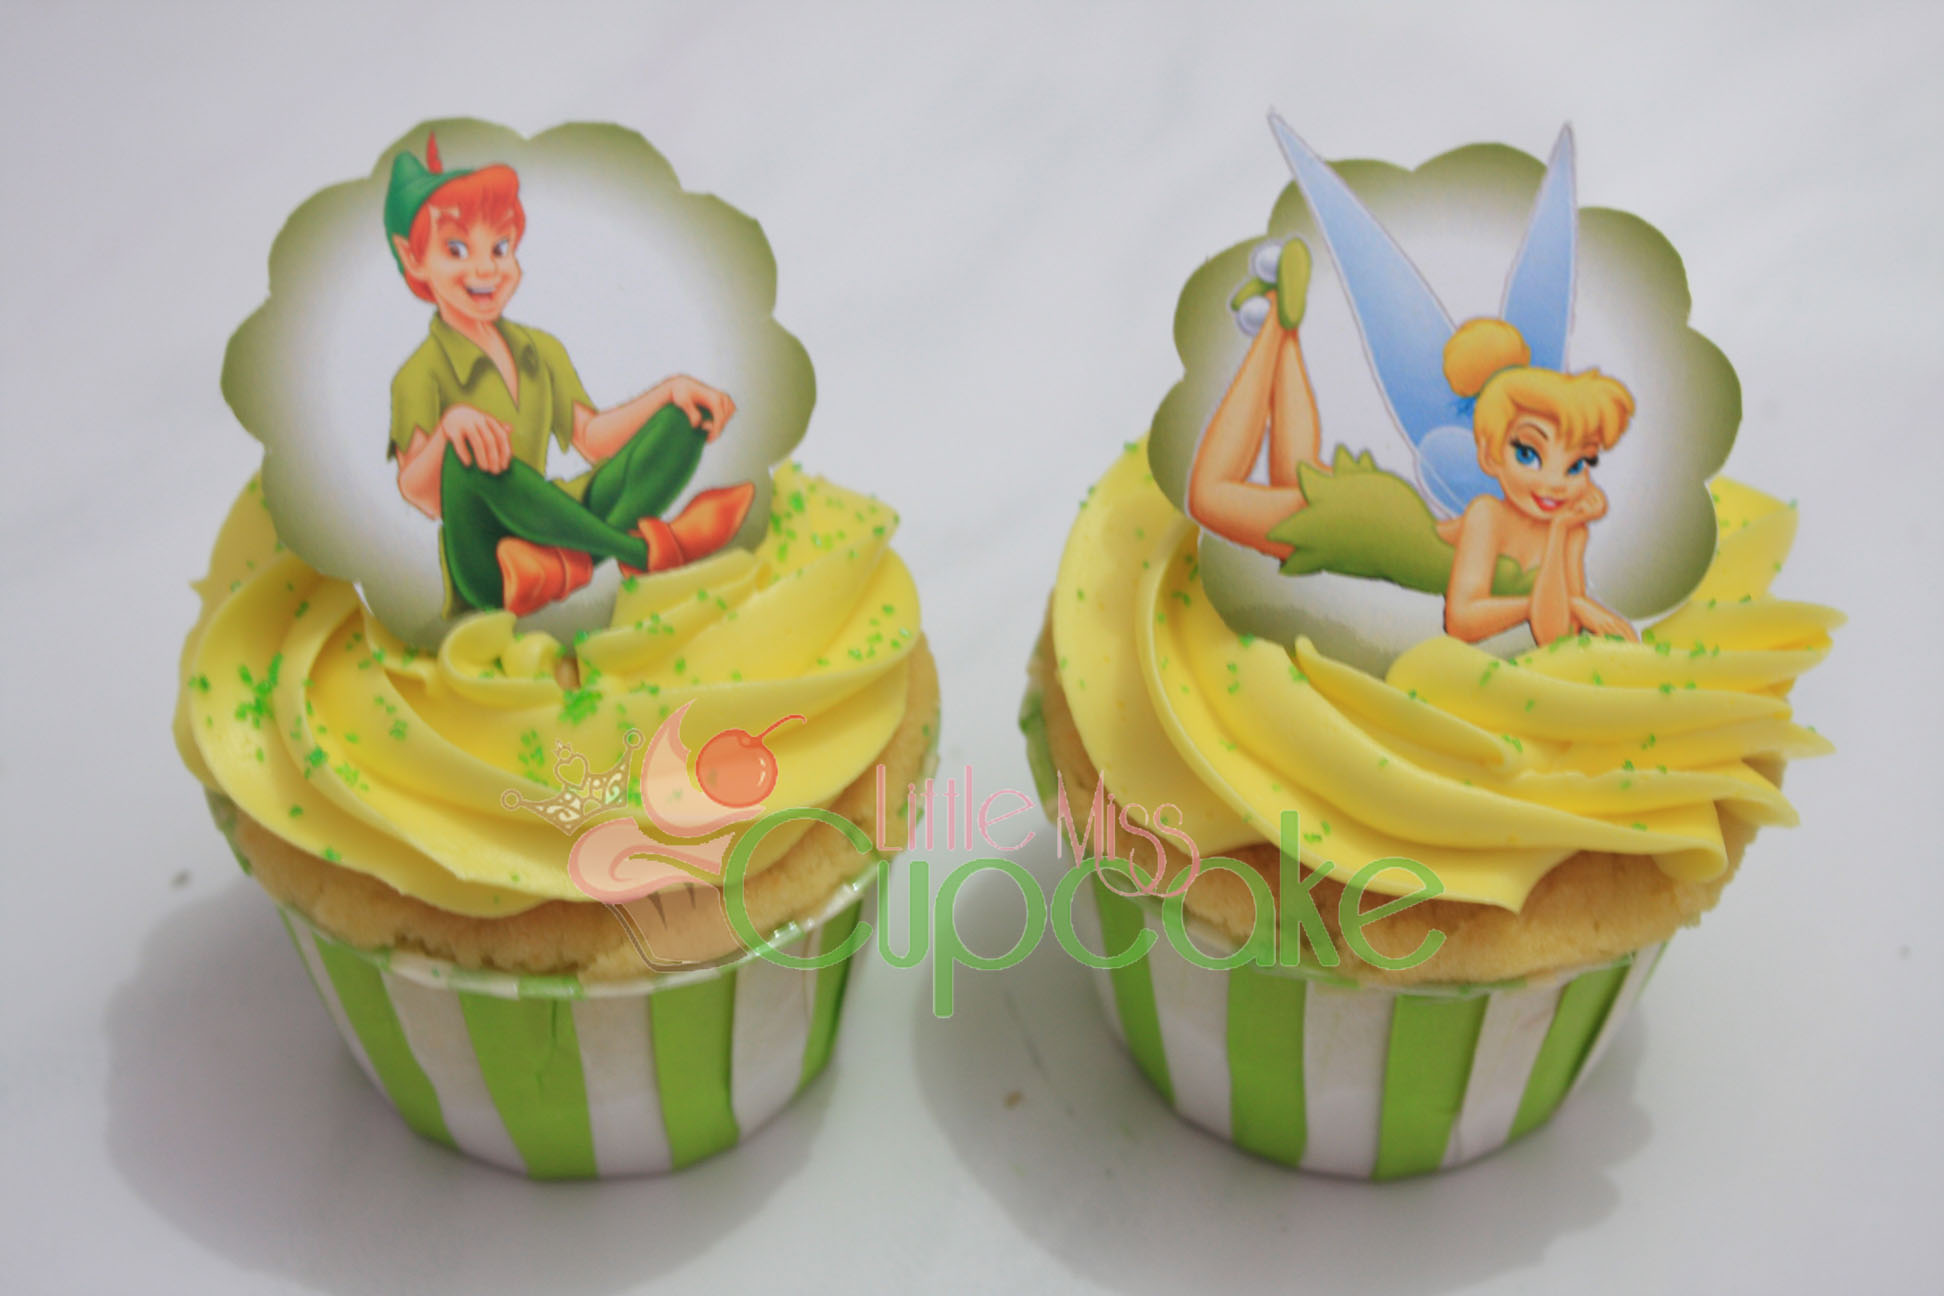 Peter Pan and Tinkerbell Cupcakes